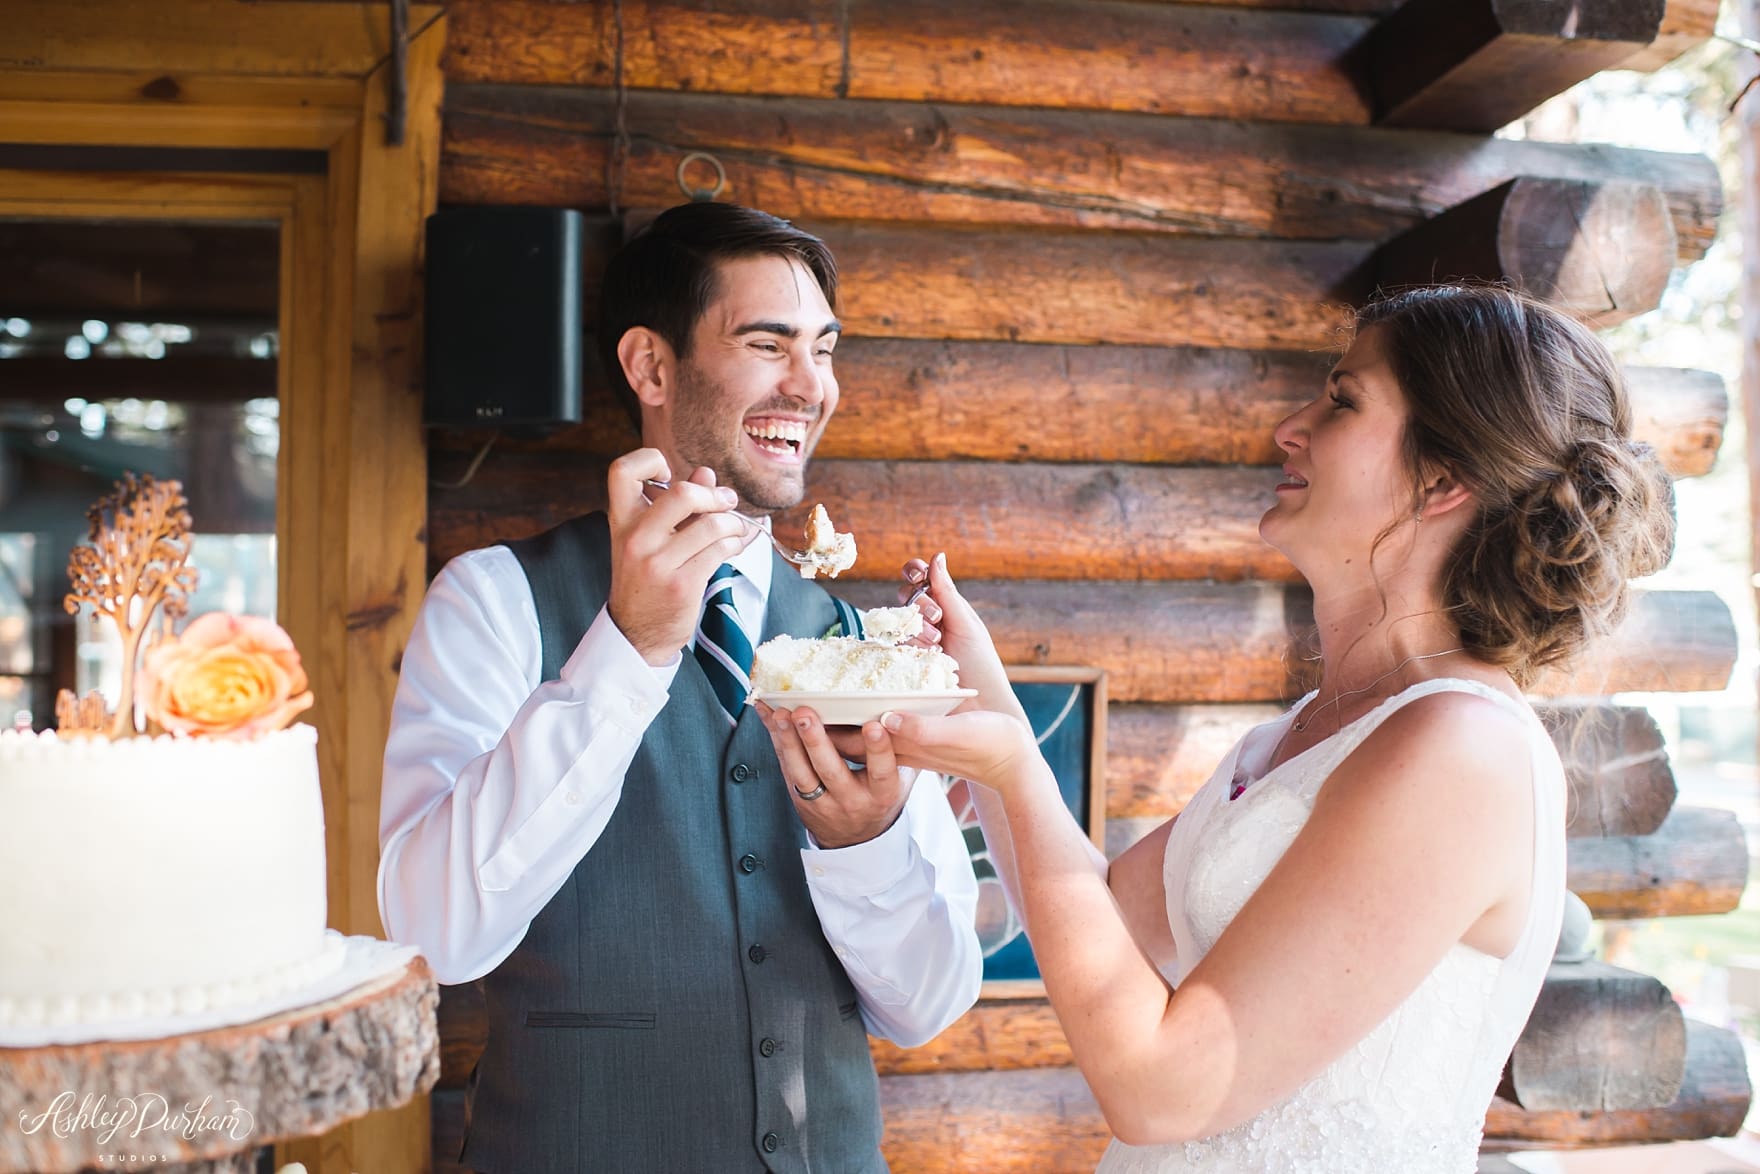 Inn at Fawnskin Wedding, Fawnksin Wedding, Big Bear Lake Wedding, cake cutting, lemon wedding cake